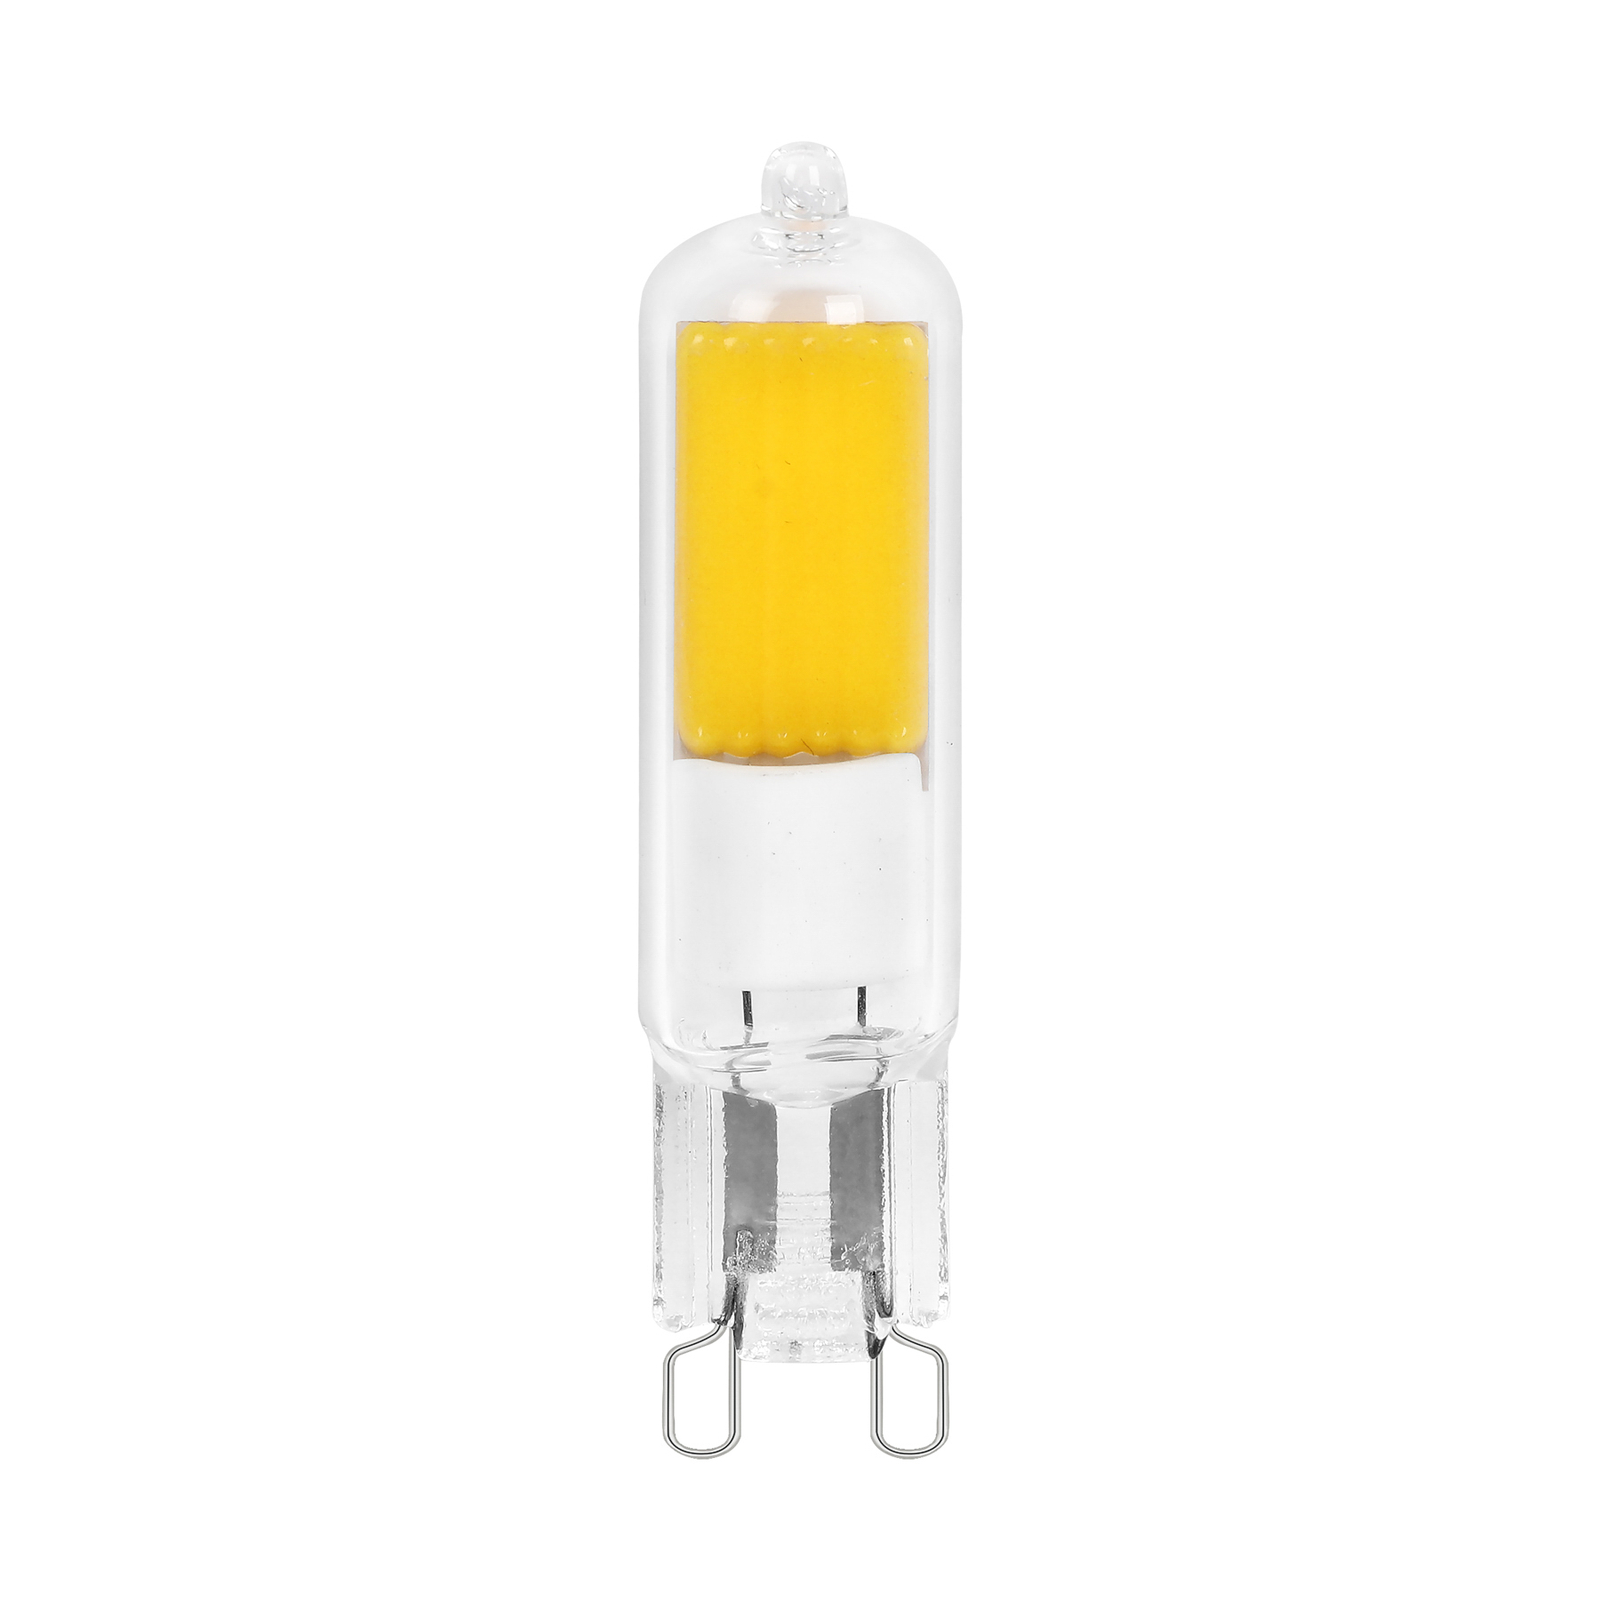 Arcchio bi-pin LED bulb, G9, 2.2W, 3000K, set of 5